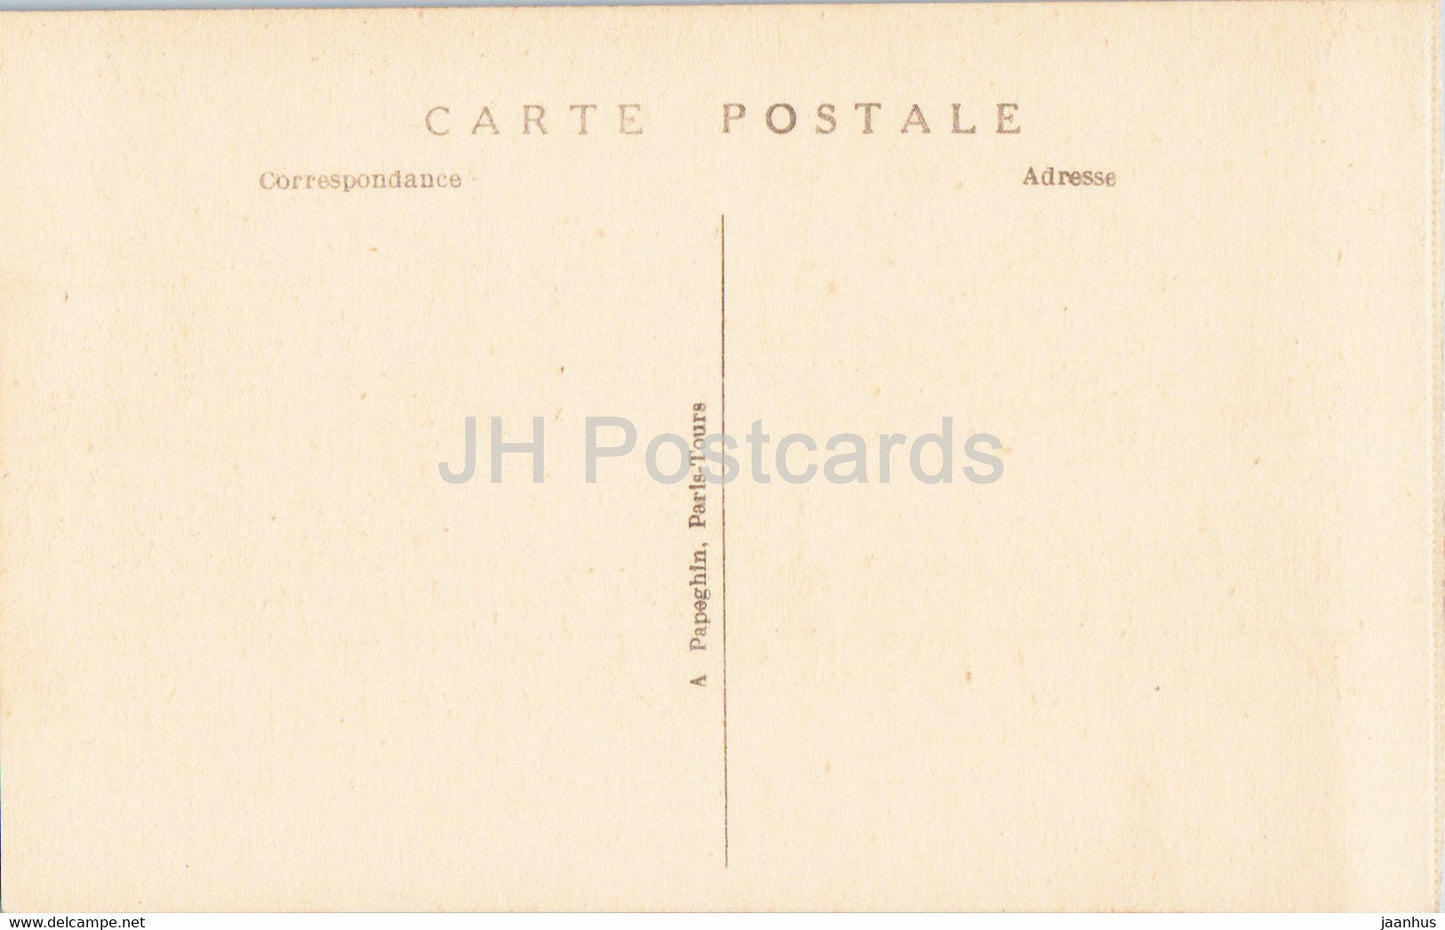 Versailles - Le Palais - Salon de l'Ceil de Boeuf - 49 - old postcard - France - unused